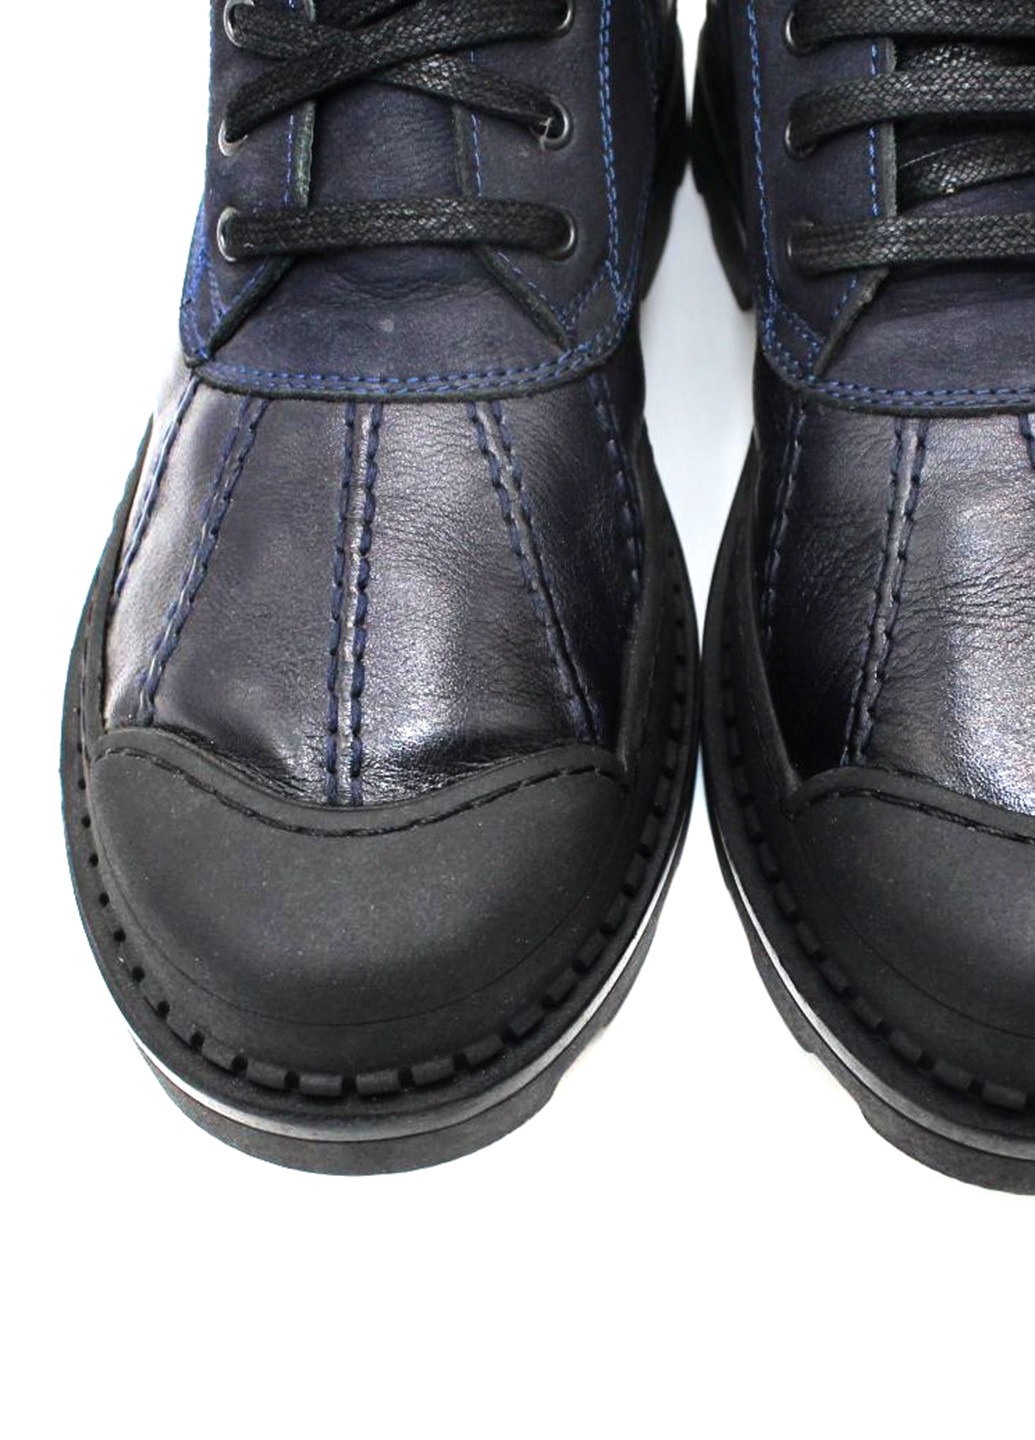 Синие осенние ботинки стилы Luciano Bellini